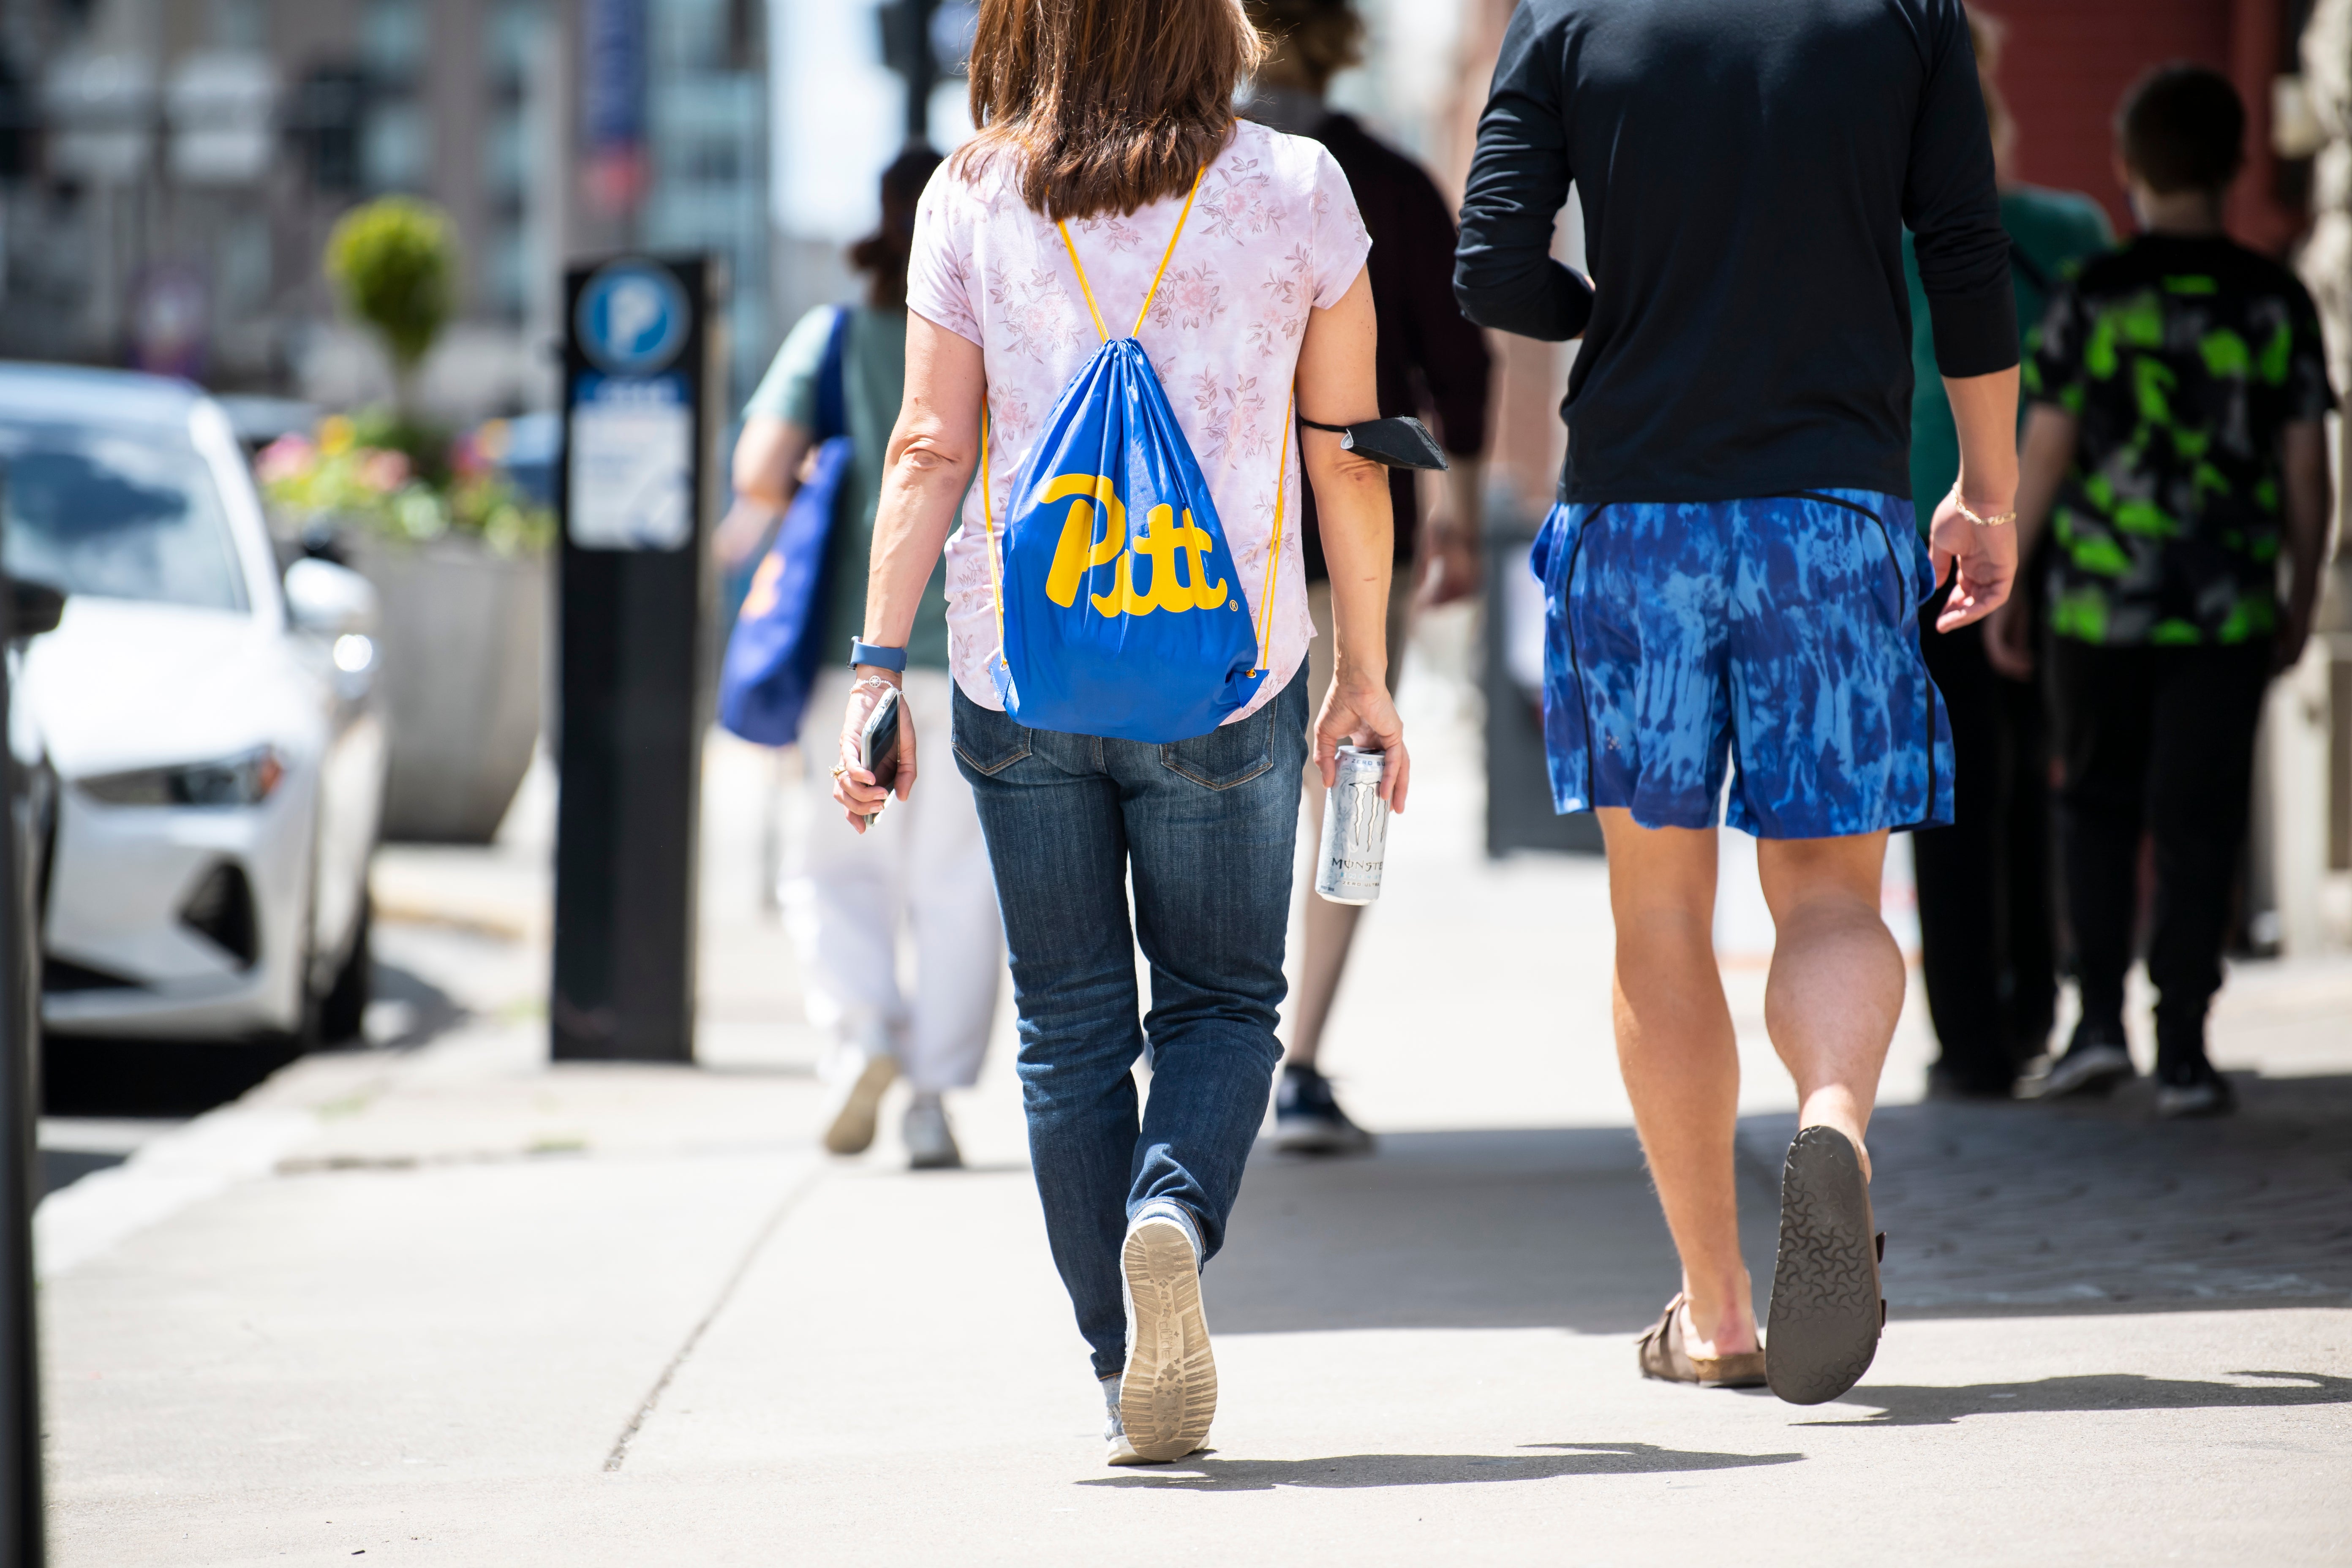 Pitt students walking in Oakland.